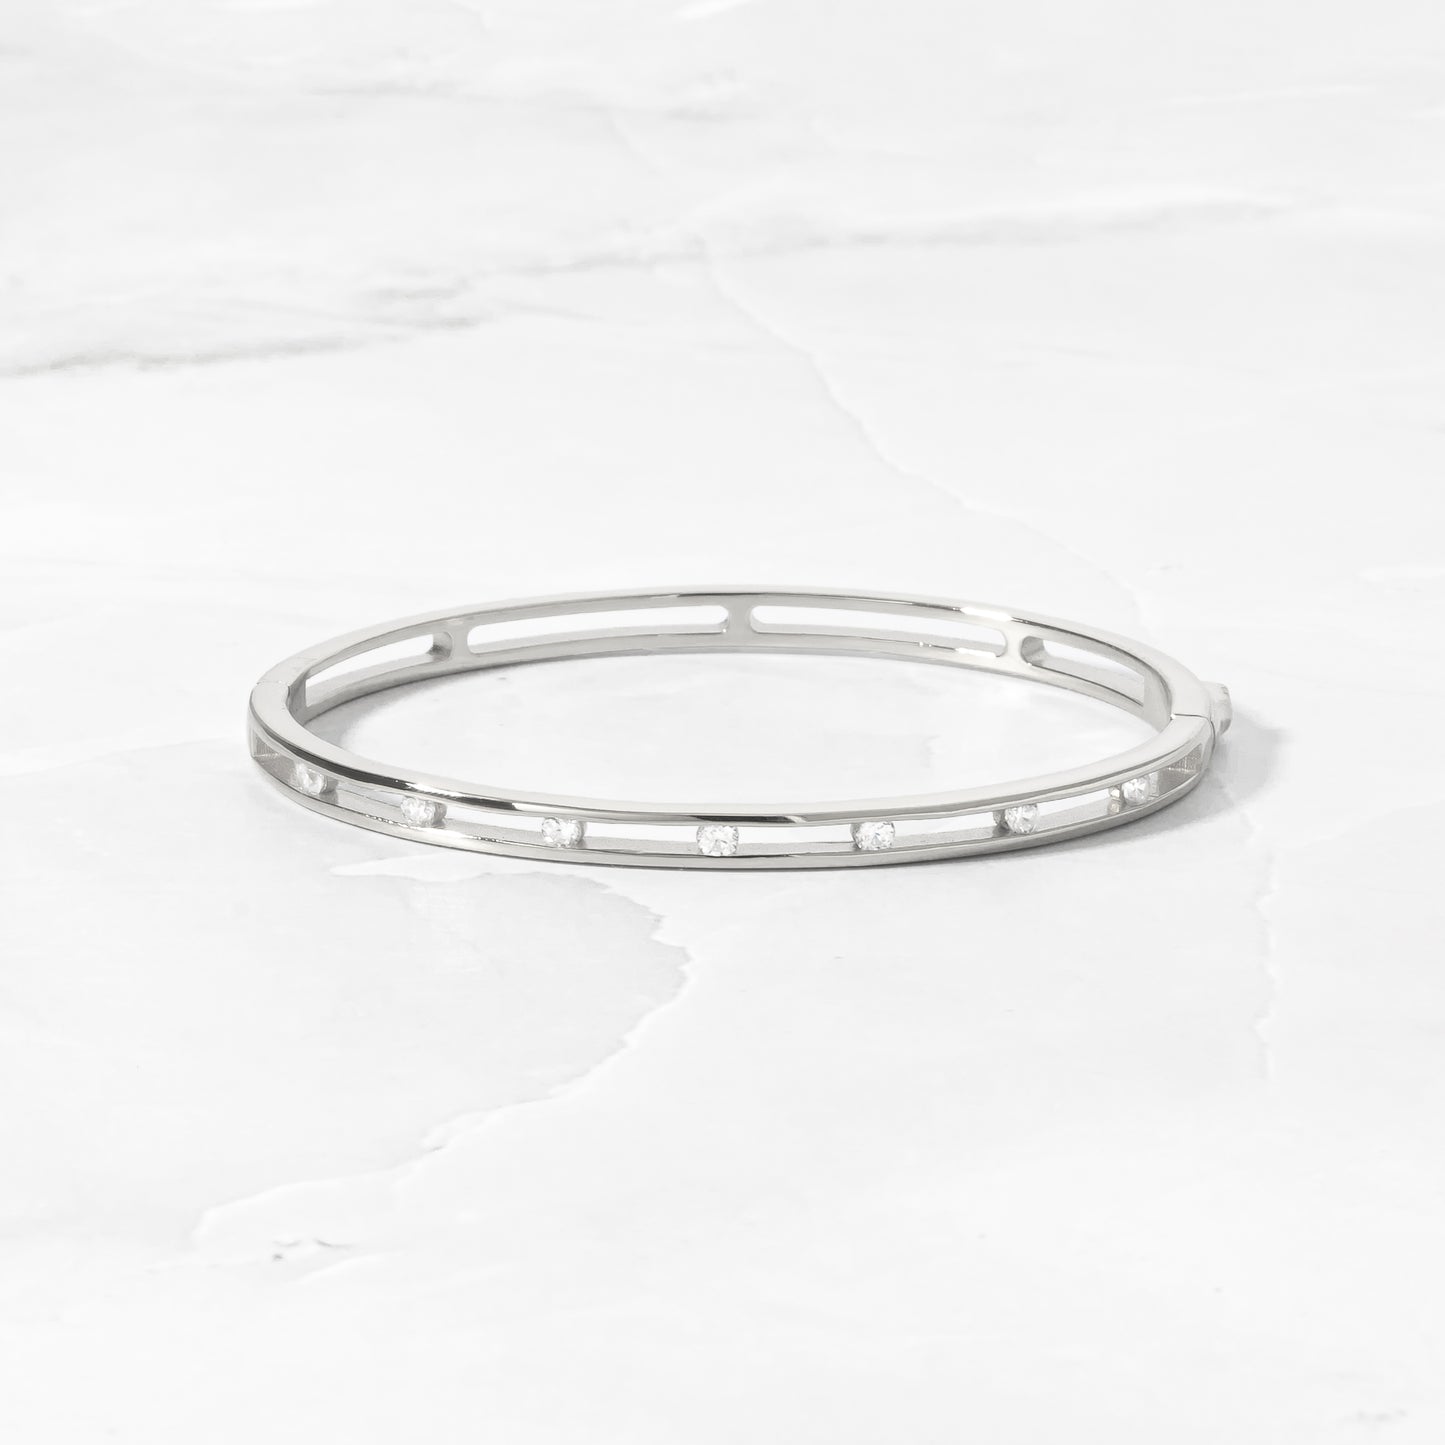 silver bangle bracelet with diamonds